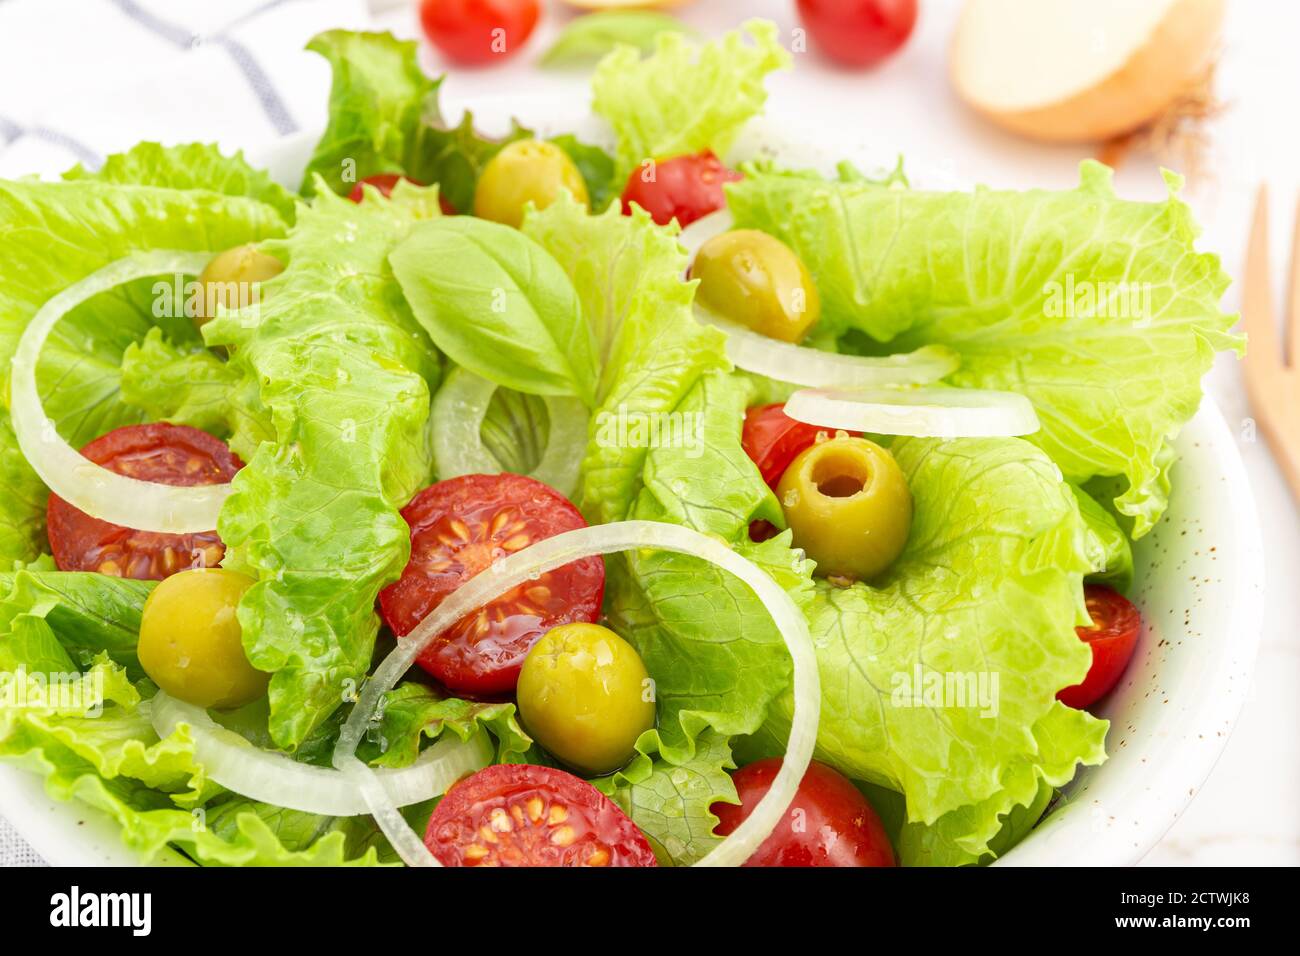 Primo piano di un'insalata fresca e sana con lattuga, cipolla, pomodori ciliegini e olive in una ciotola. Cucina mediterranea Foto Stock